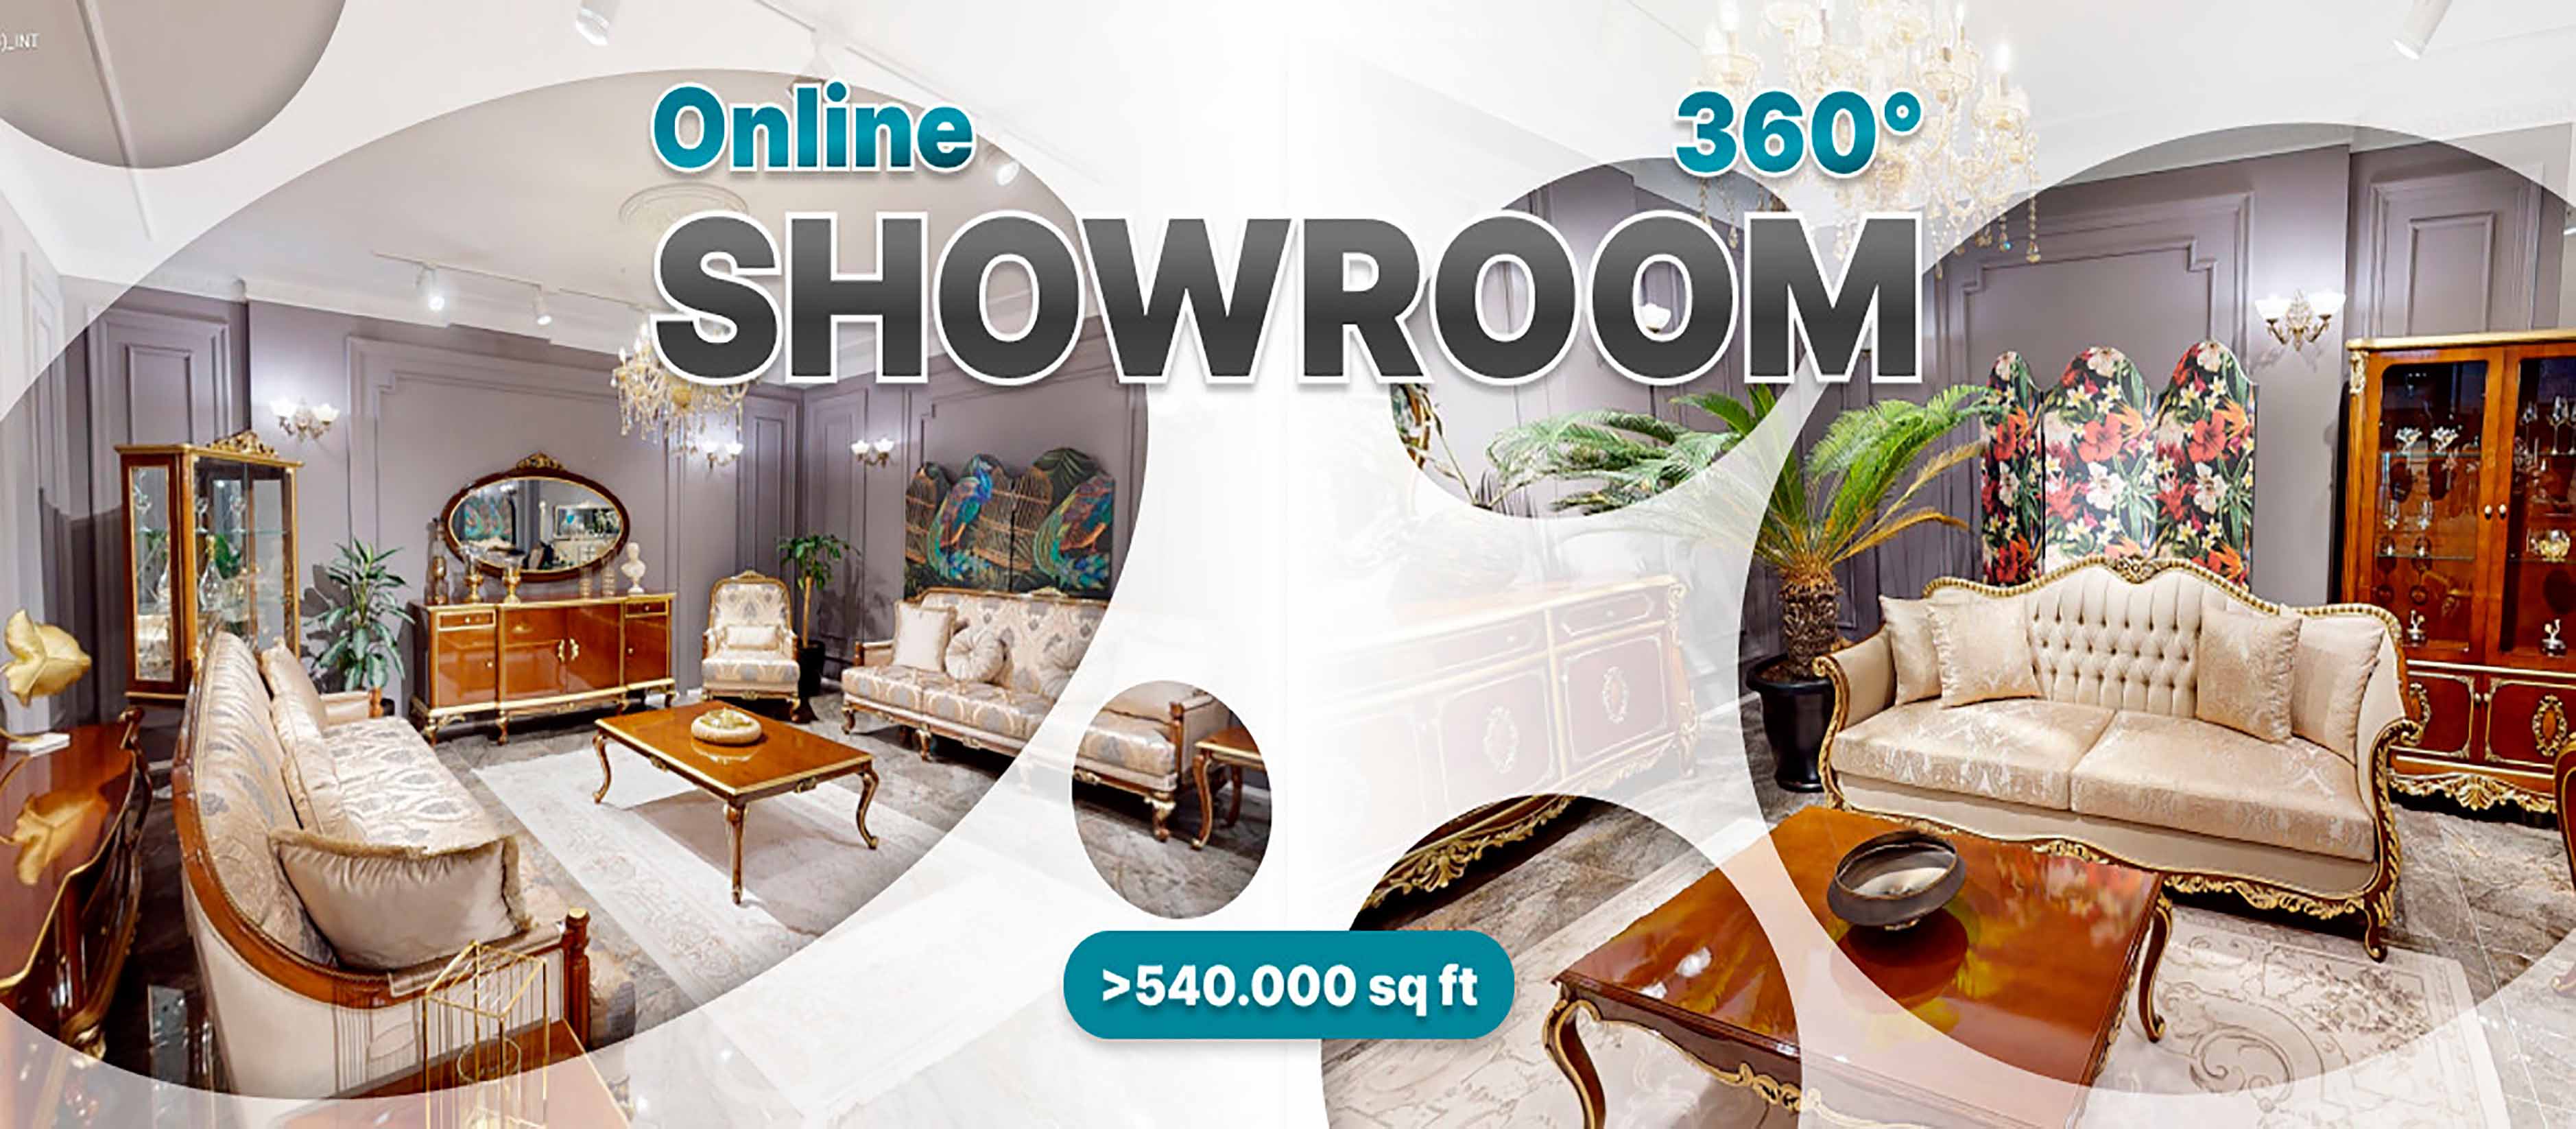 Visit the JVFurniture Online Showroom